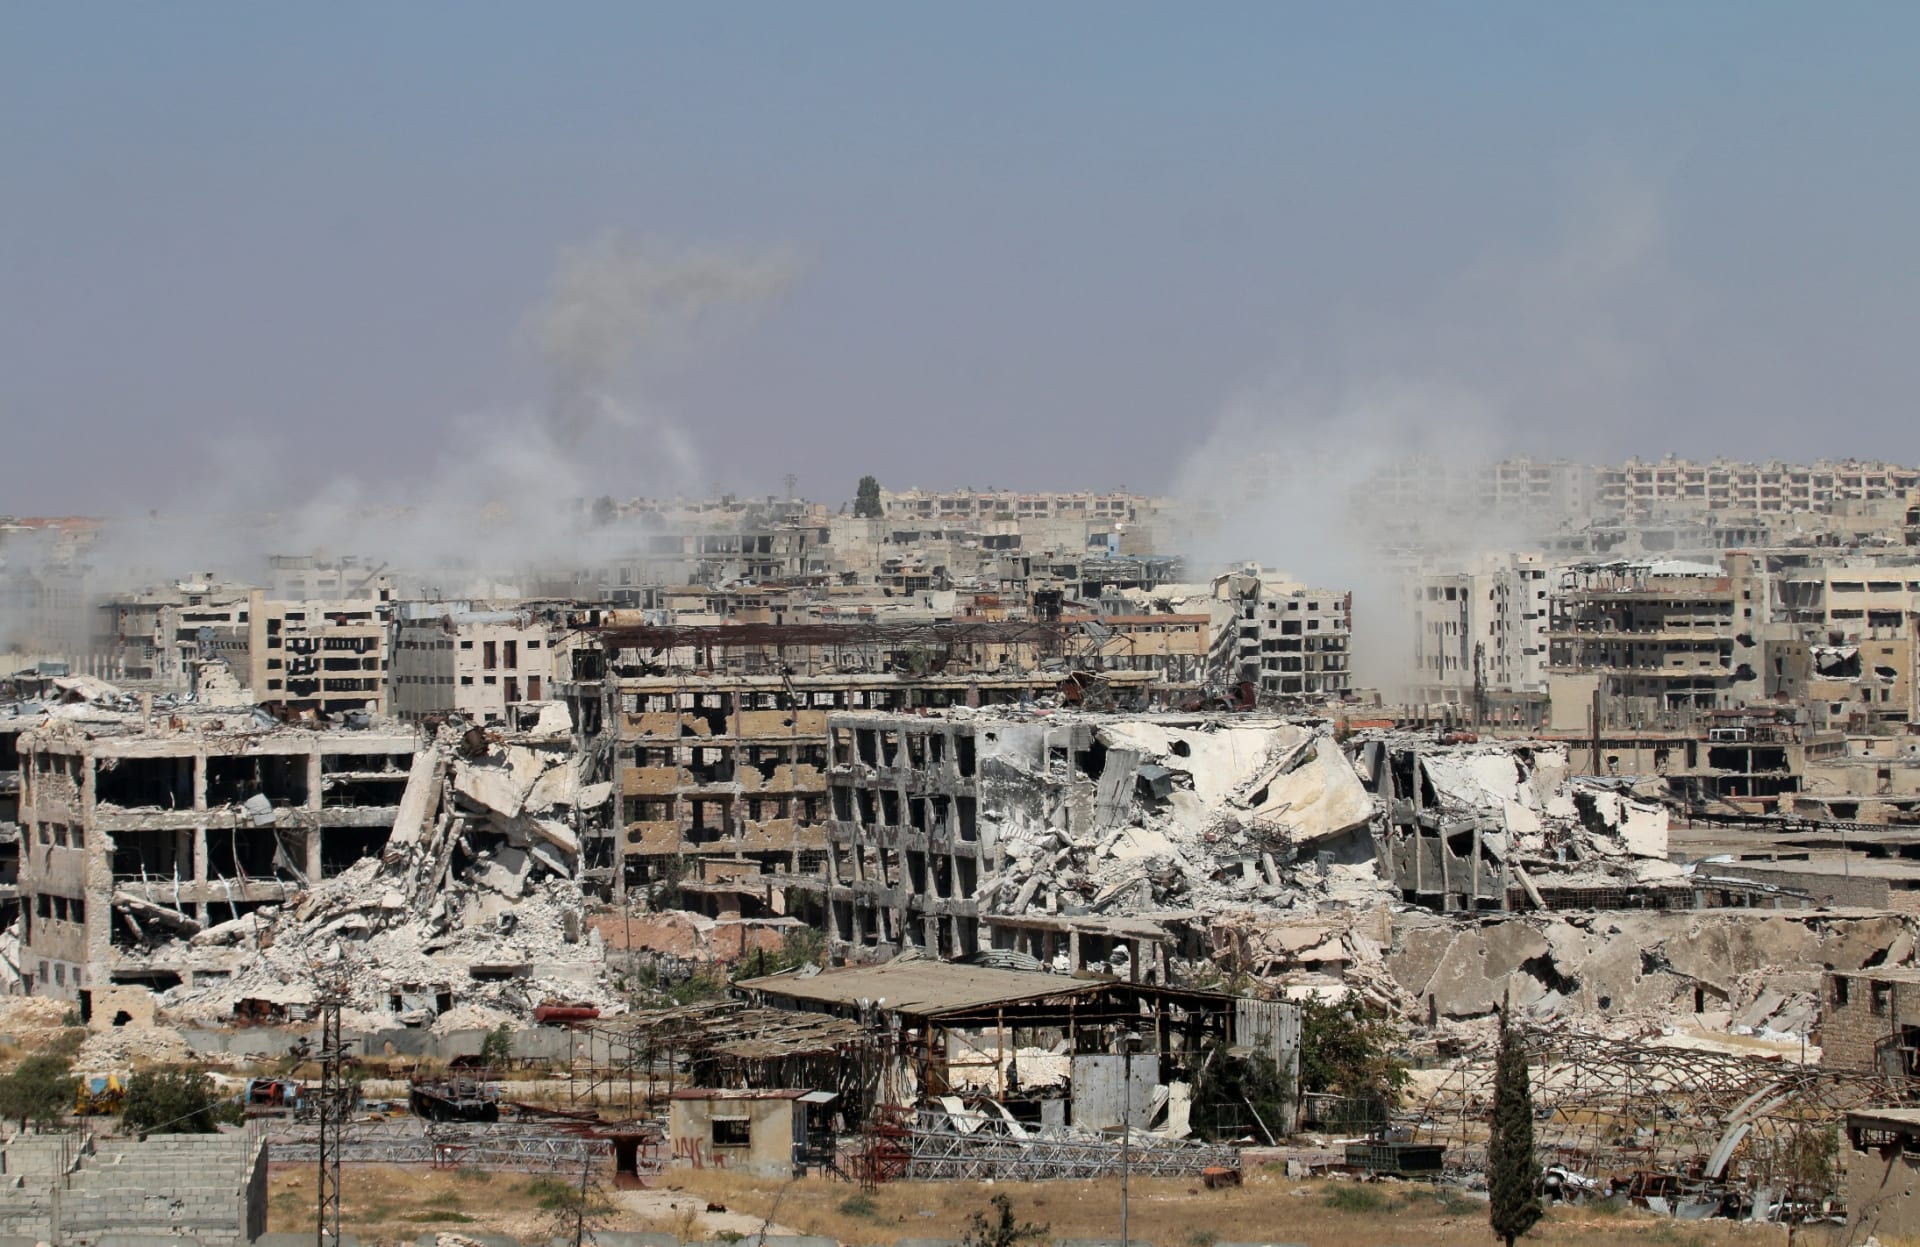 المعارضة تدخل "المرحلة الثالثة" من معركة فك الحصار عن حلب وتعرض العفو عن جنود الأسد